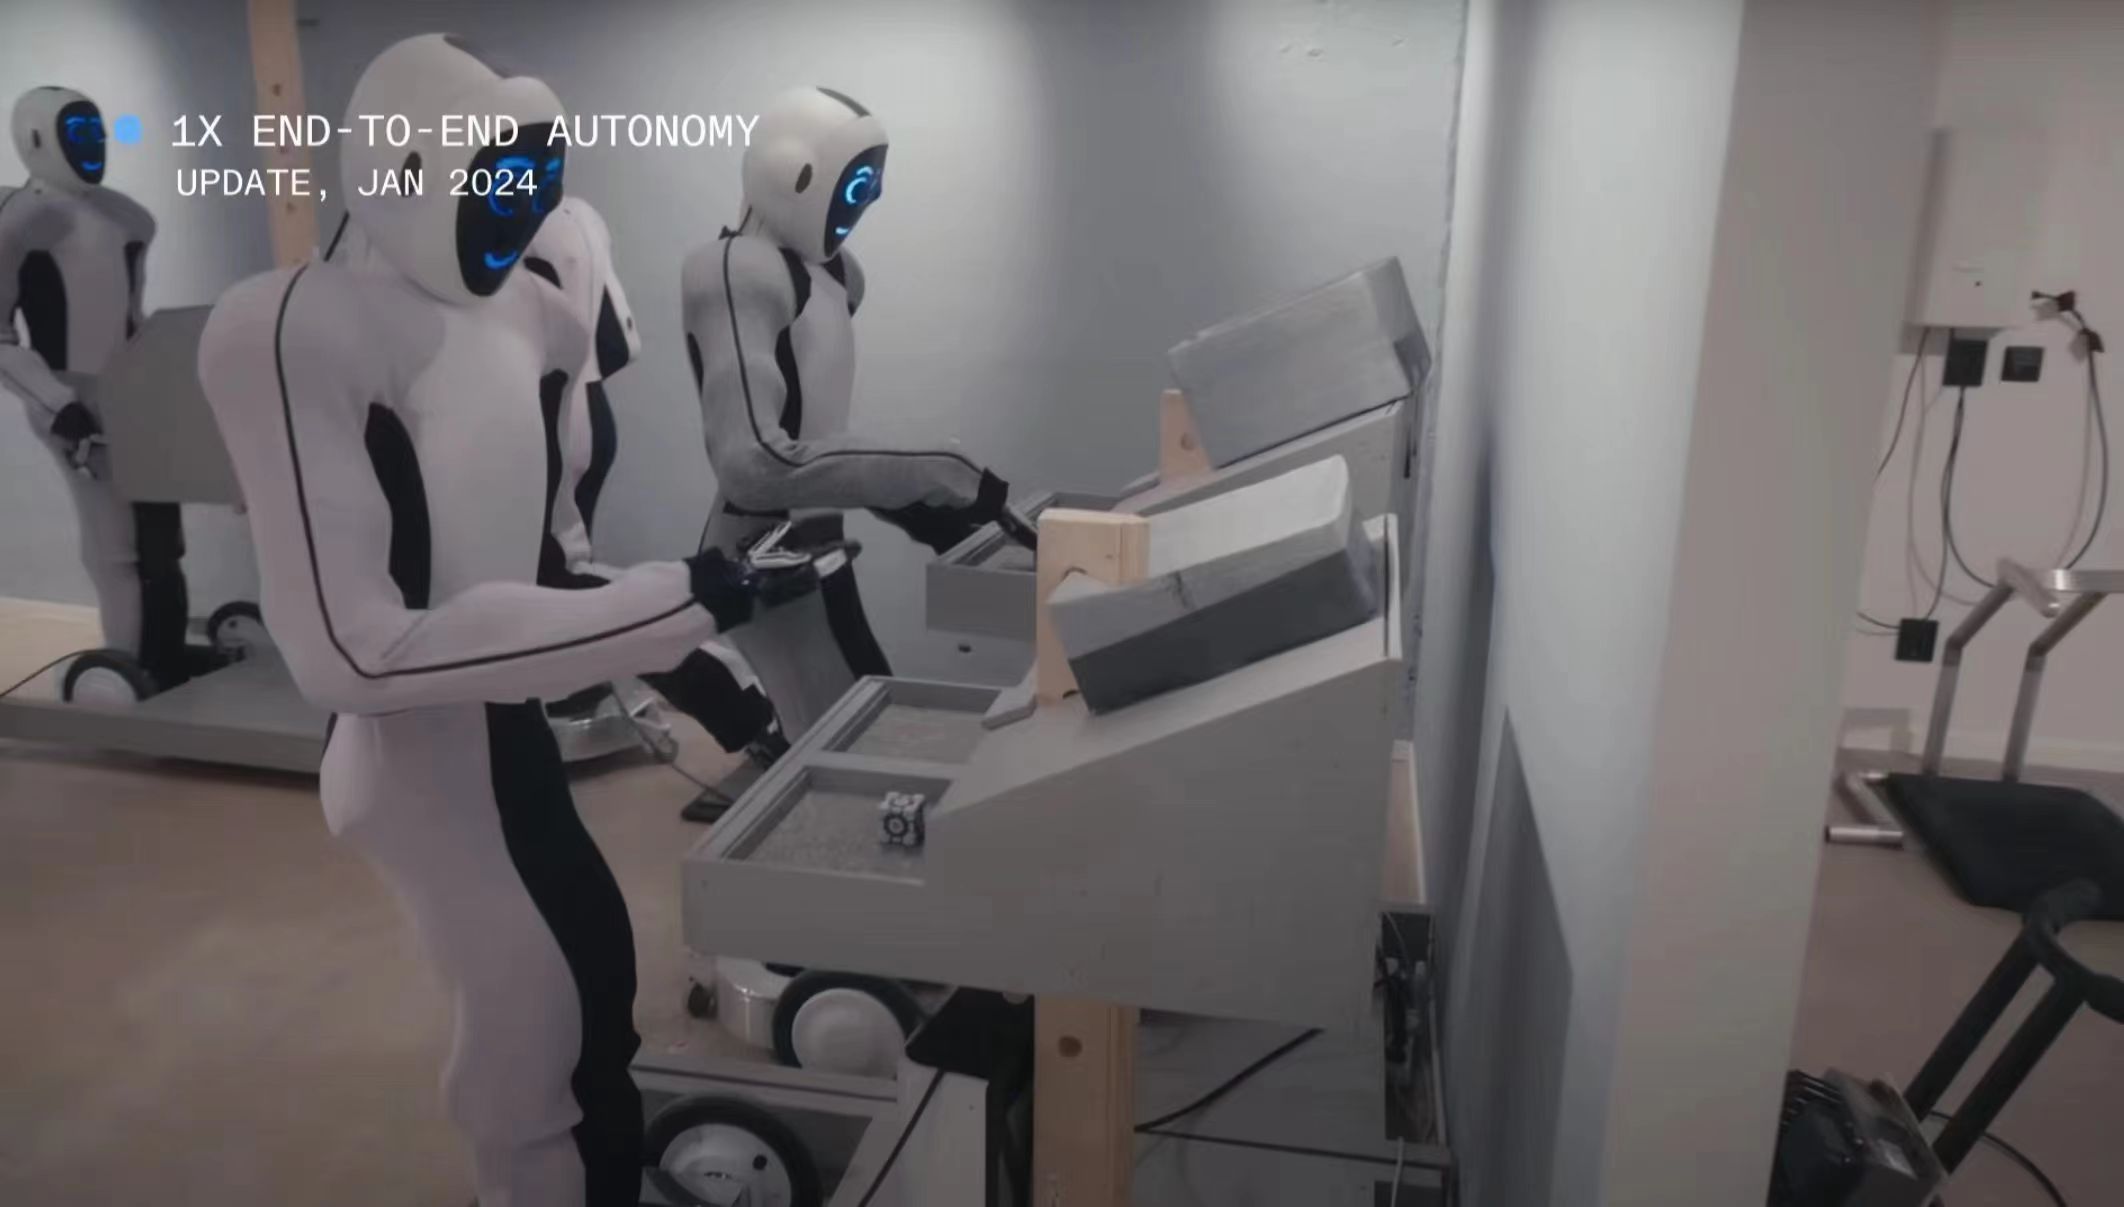 1X 发布其人形机器人 Eve 的新视频 全程由机器人拍摄 恐怖谷效应引发关注